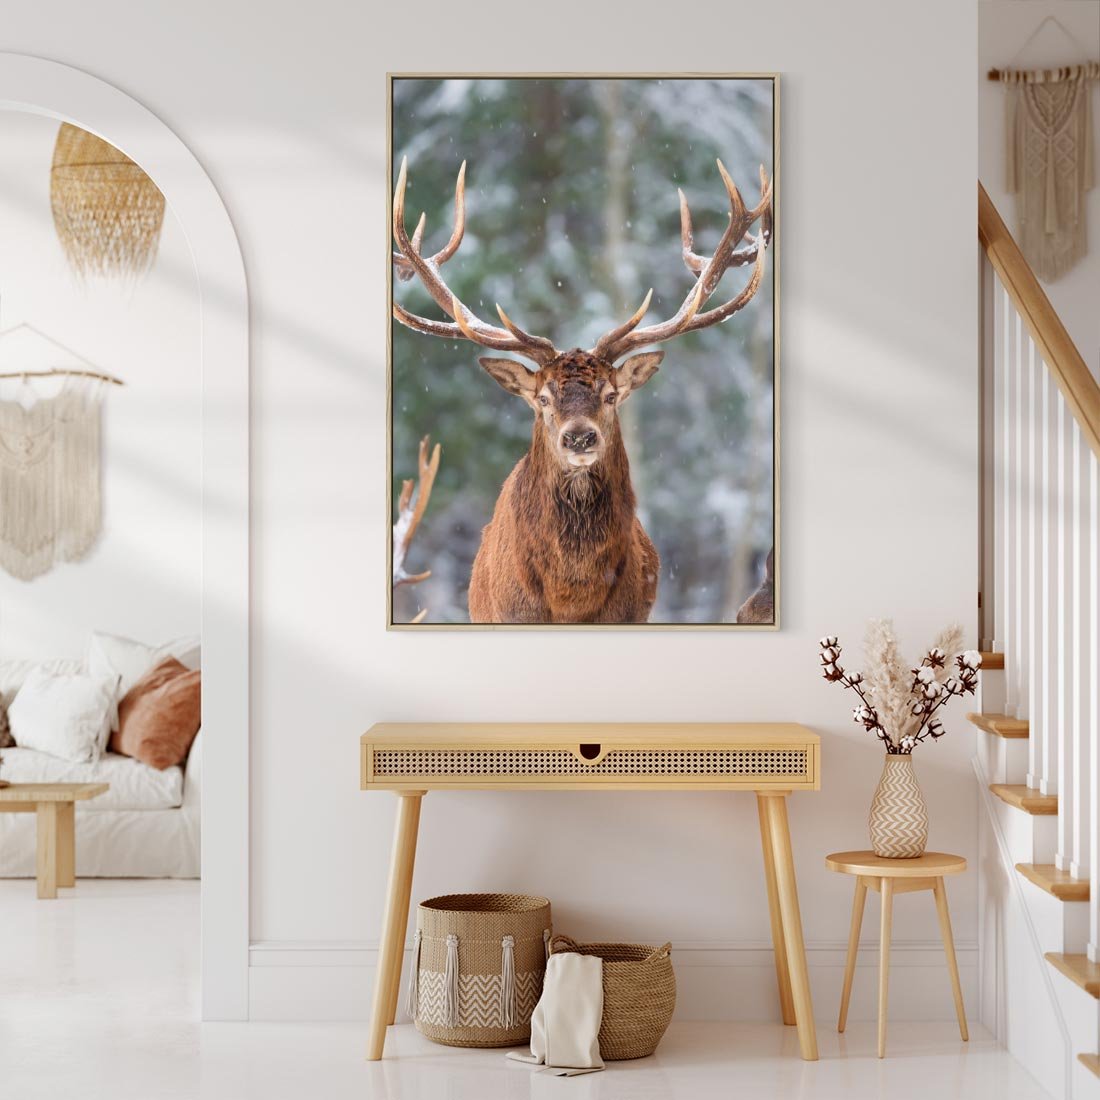 Obraz w ramie 50x70 - Monarcha Zimowej Dziczy - jeleń, zima - rama drewno